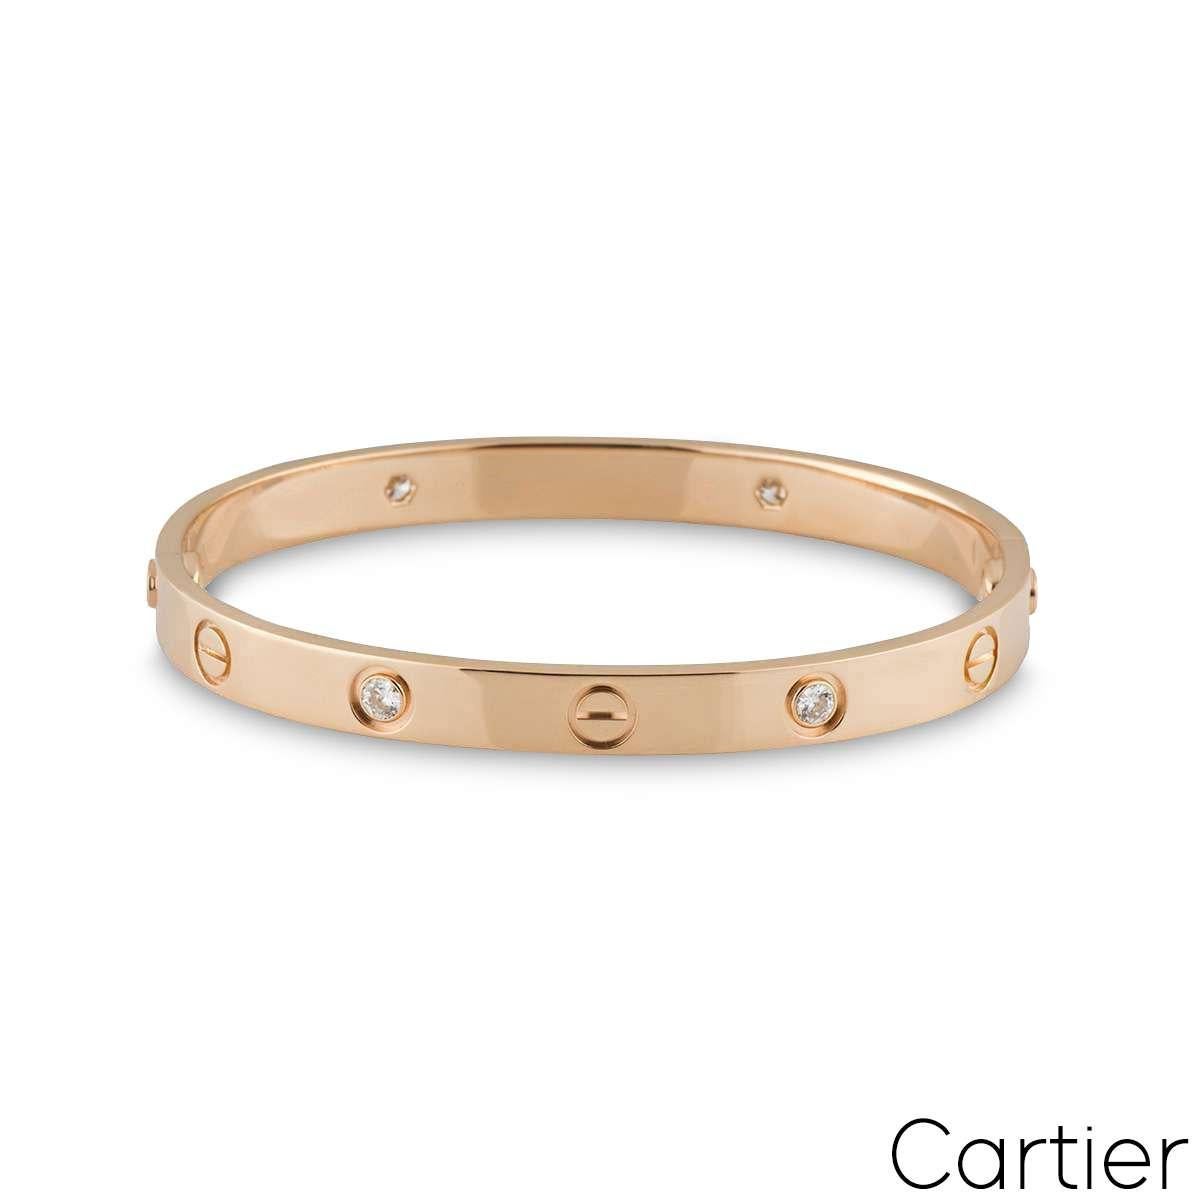 Un bracelet demi diamant en or rose 18k de Cartier de la collection Love. Les motifs iconiques de la vis alternent avec quatre diamants ronds de taille brillant dans une monture rubis d'un poids de 0,42ct. Le bracelet, de taille 18, est doté du